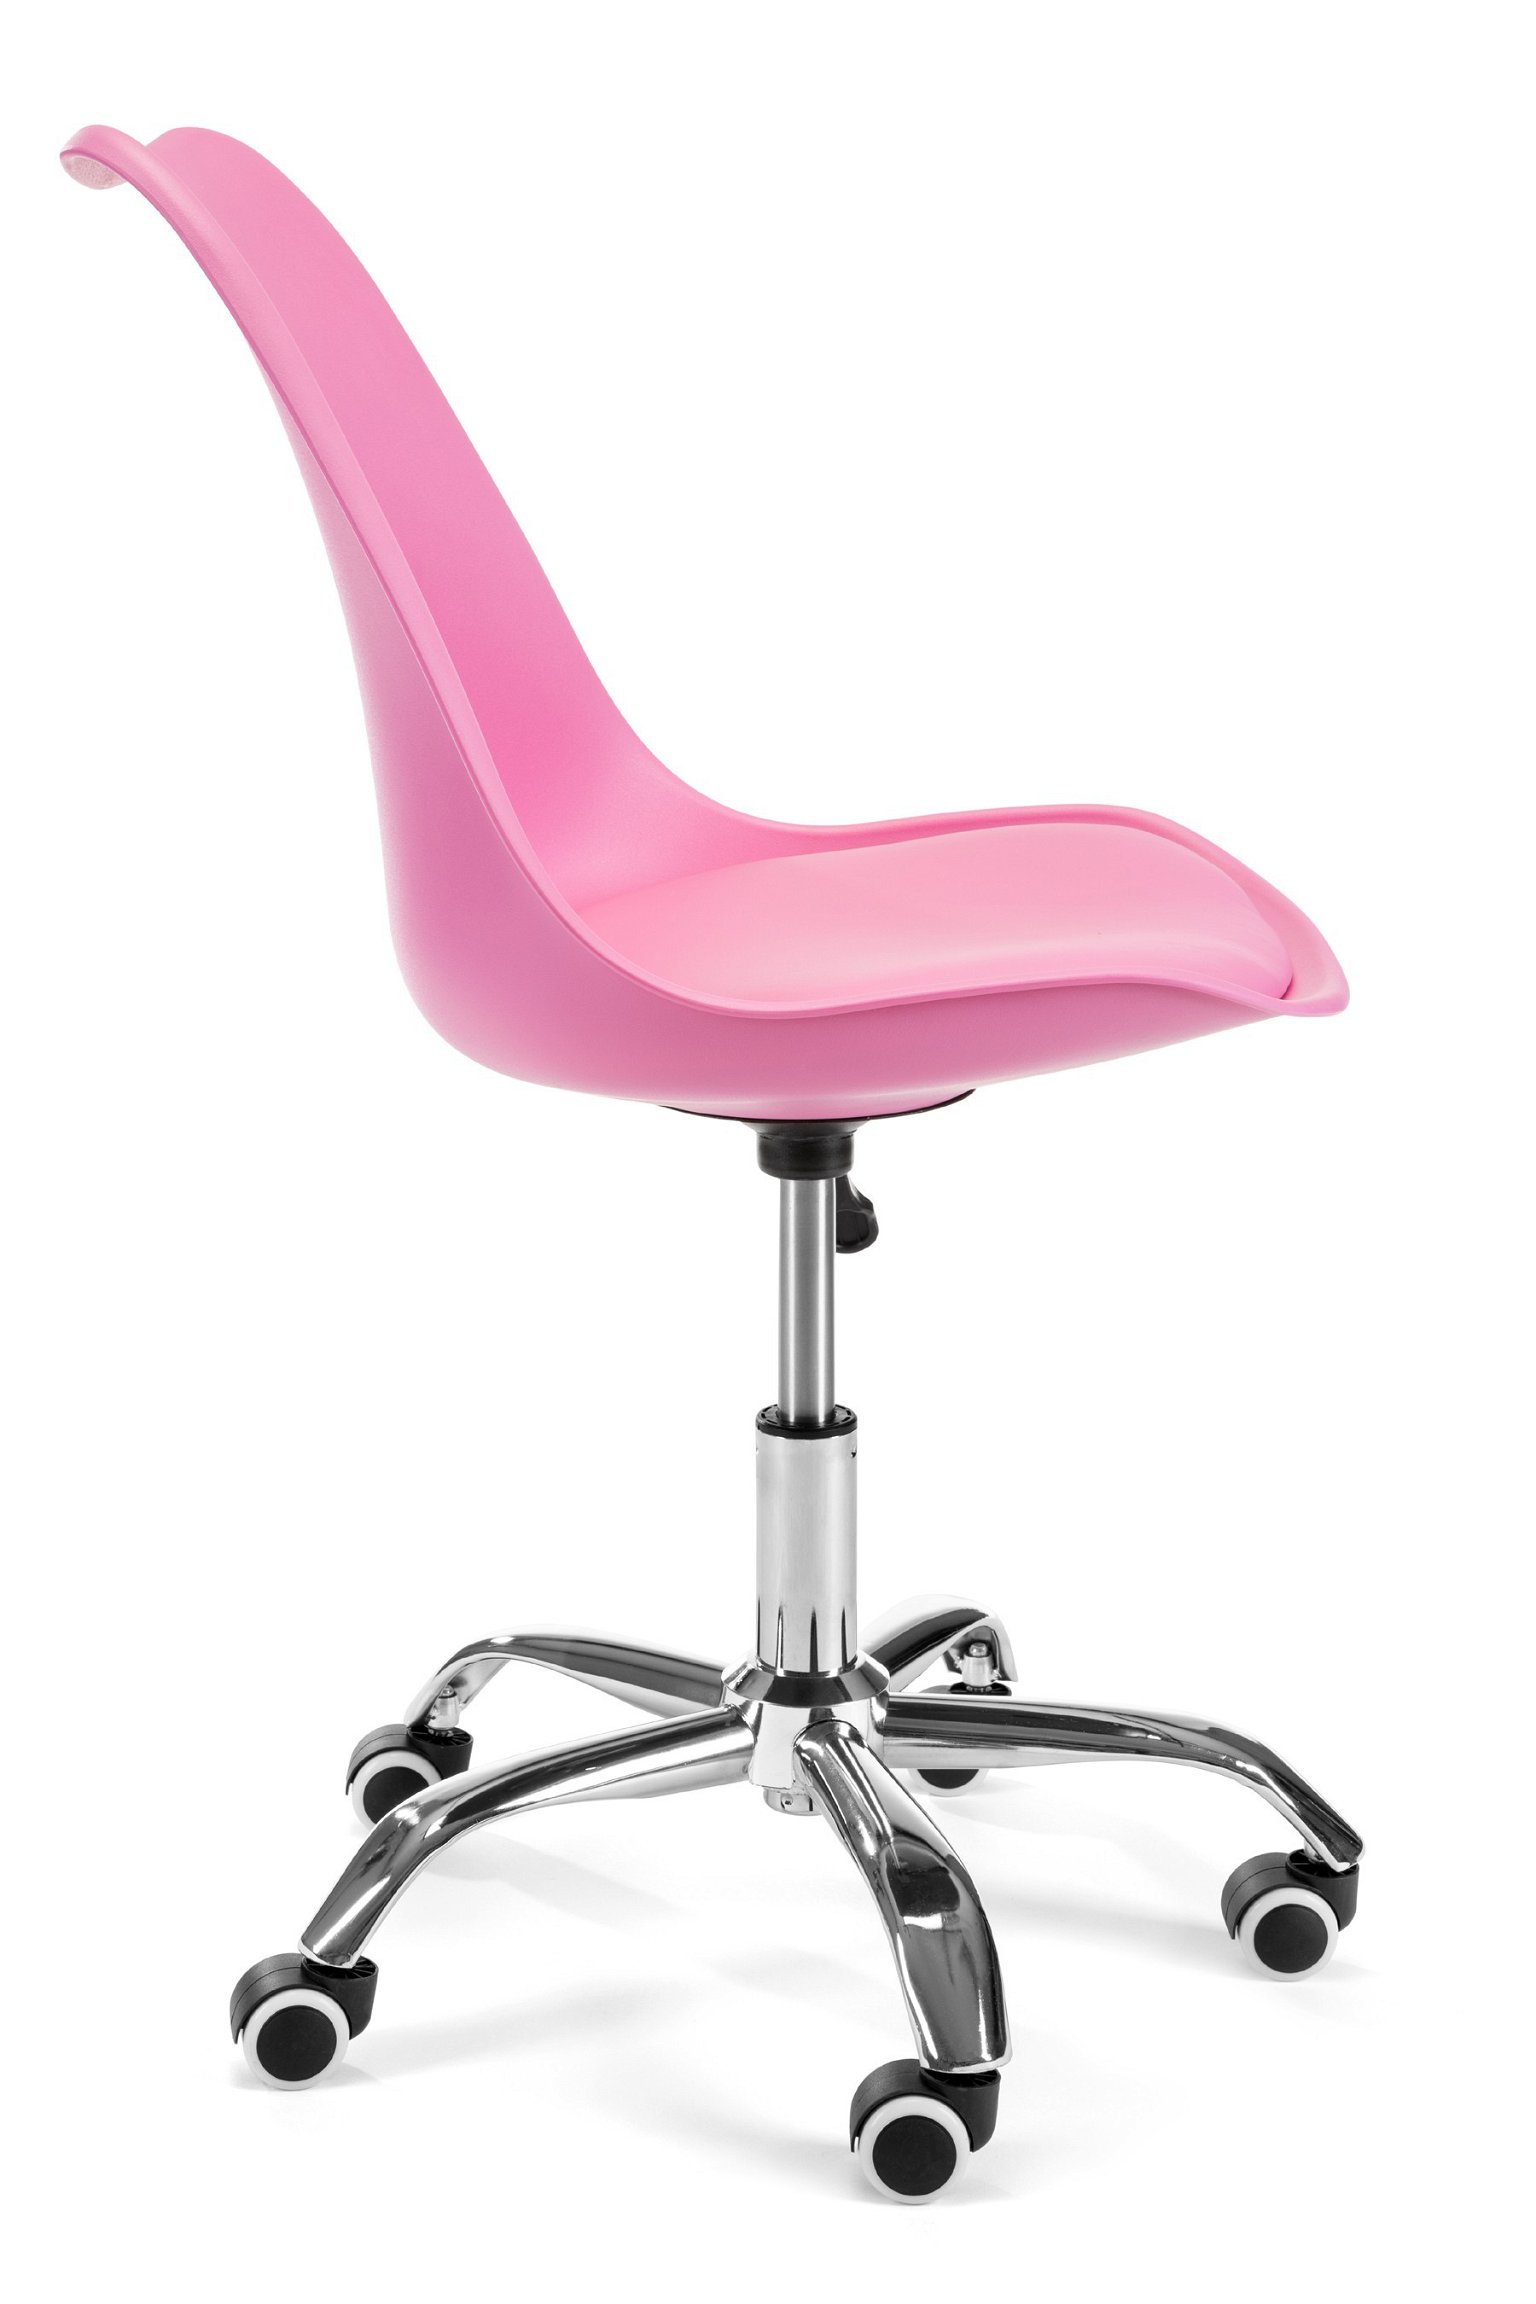 Vaikiška kėdė FD005, rožinė - 2